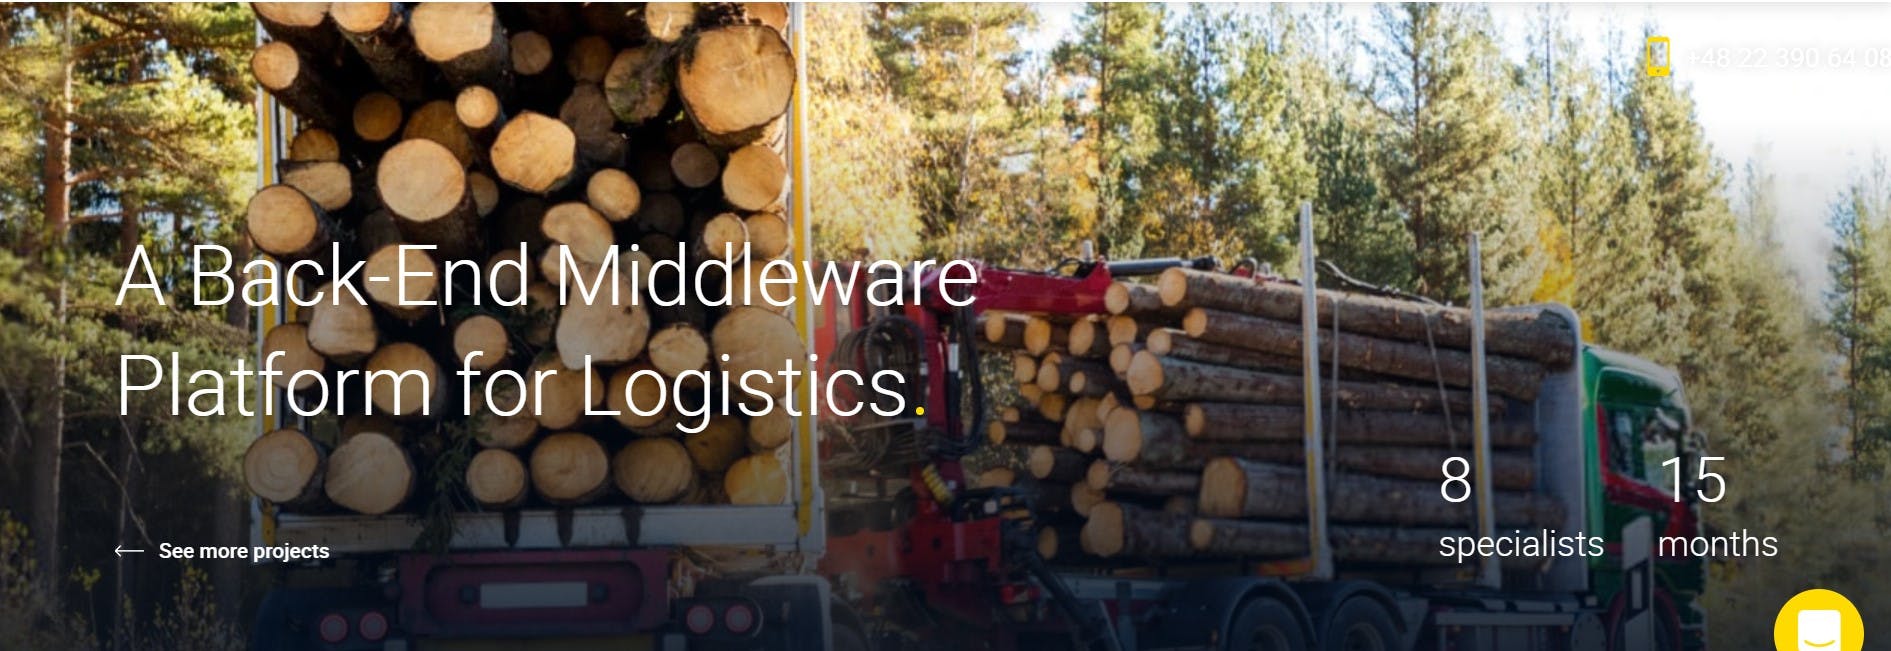 A Back-End Middleware Platform For Logistics 